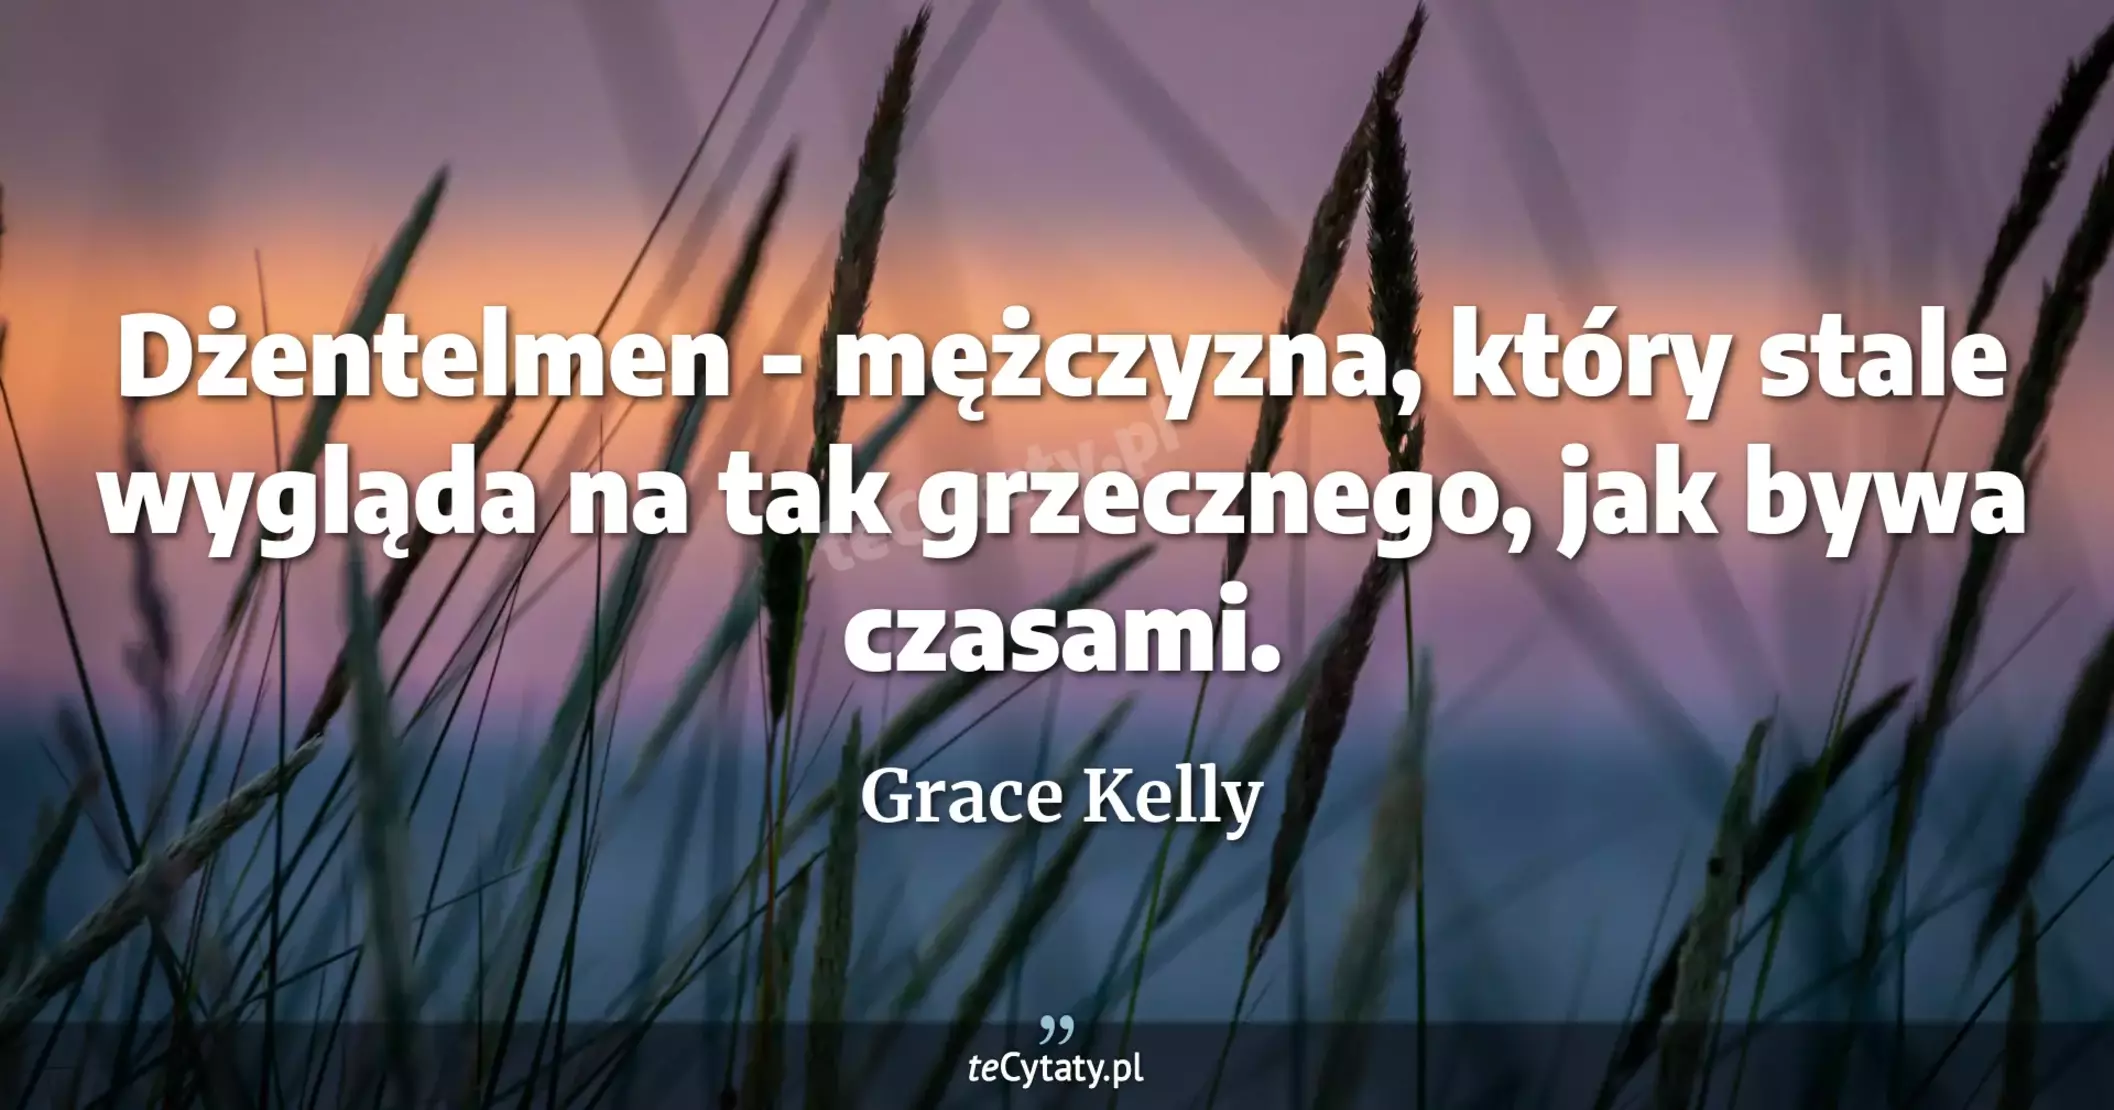 Dżentelmen - mężczyzna, który stale wygląda na tak grzecznego, jak bywa czasami. - Grace Kelly